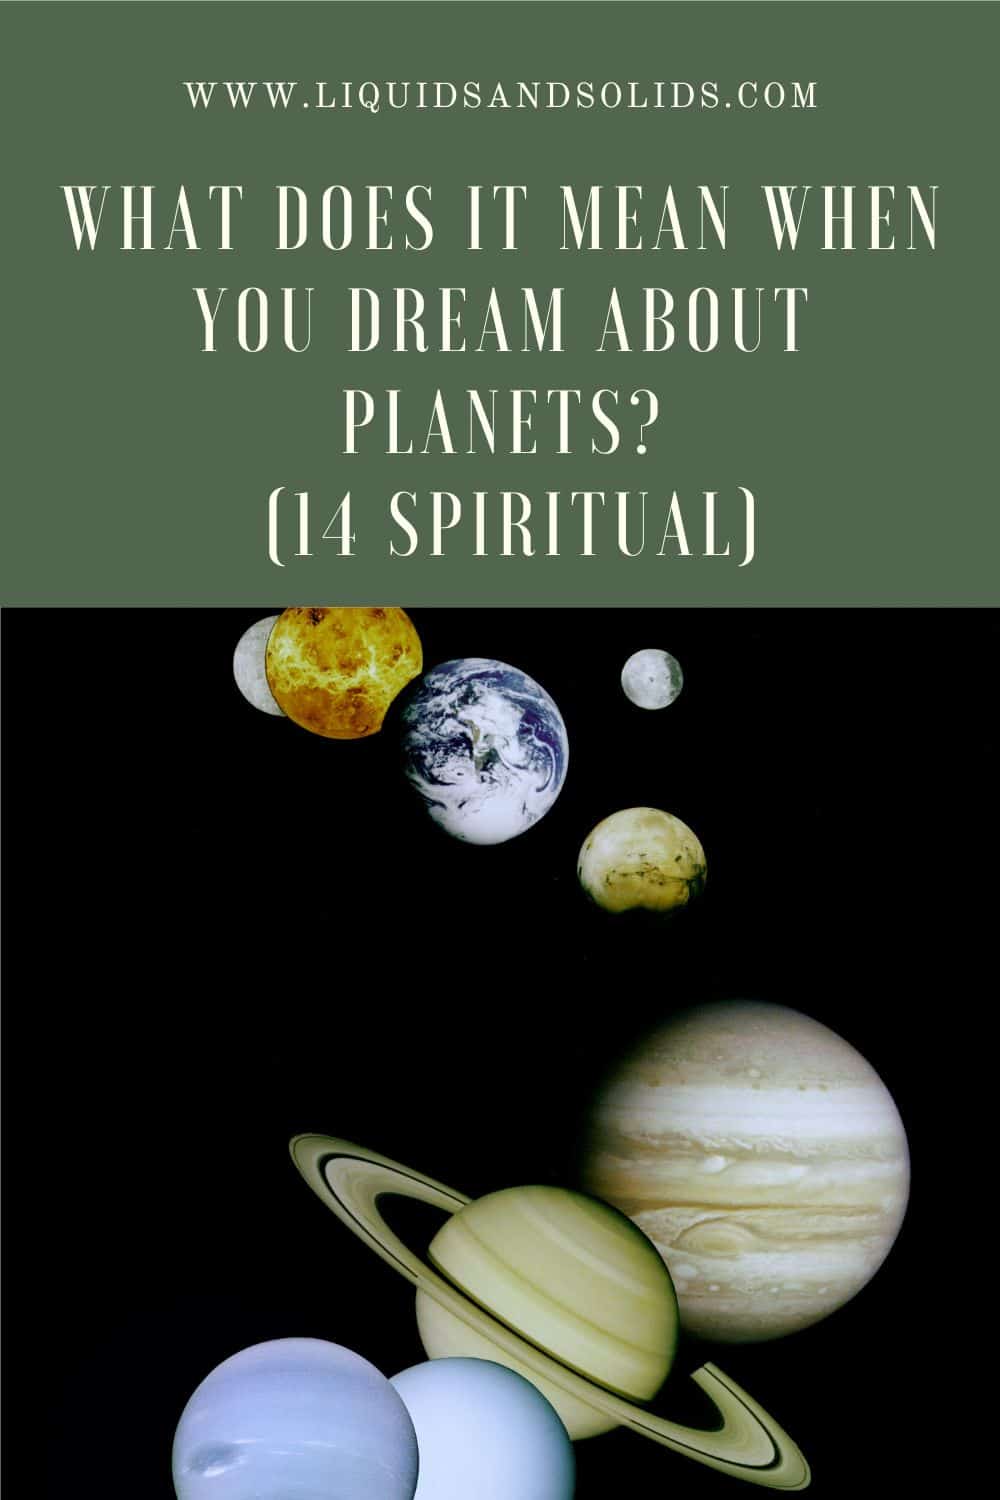  Rêver de planètes (14 significations spirituelles)